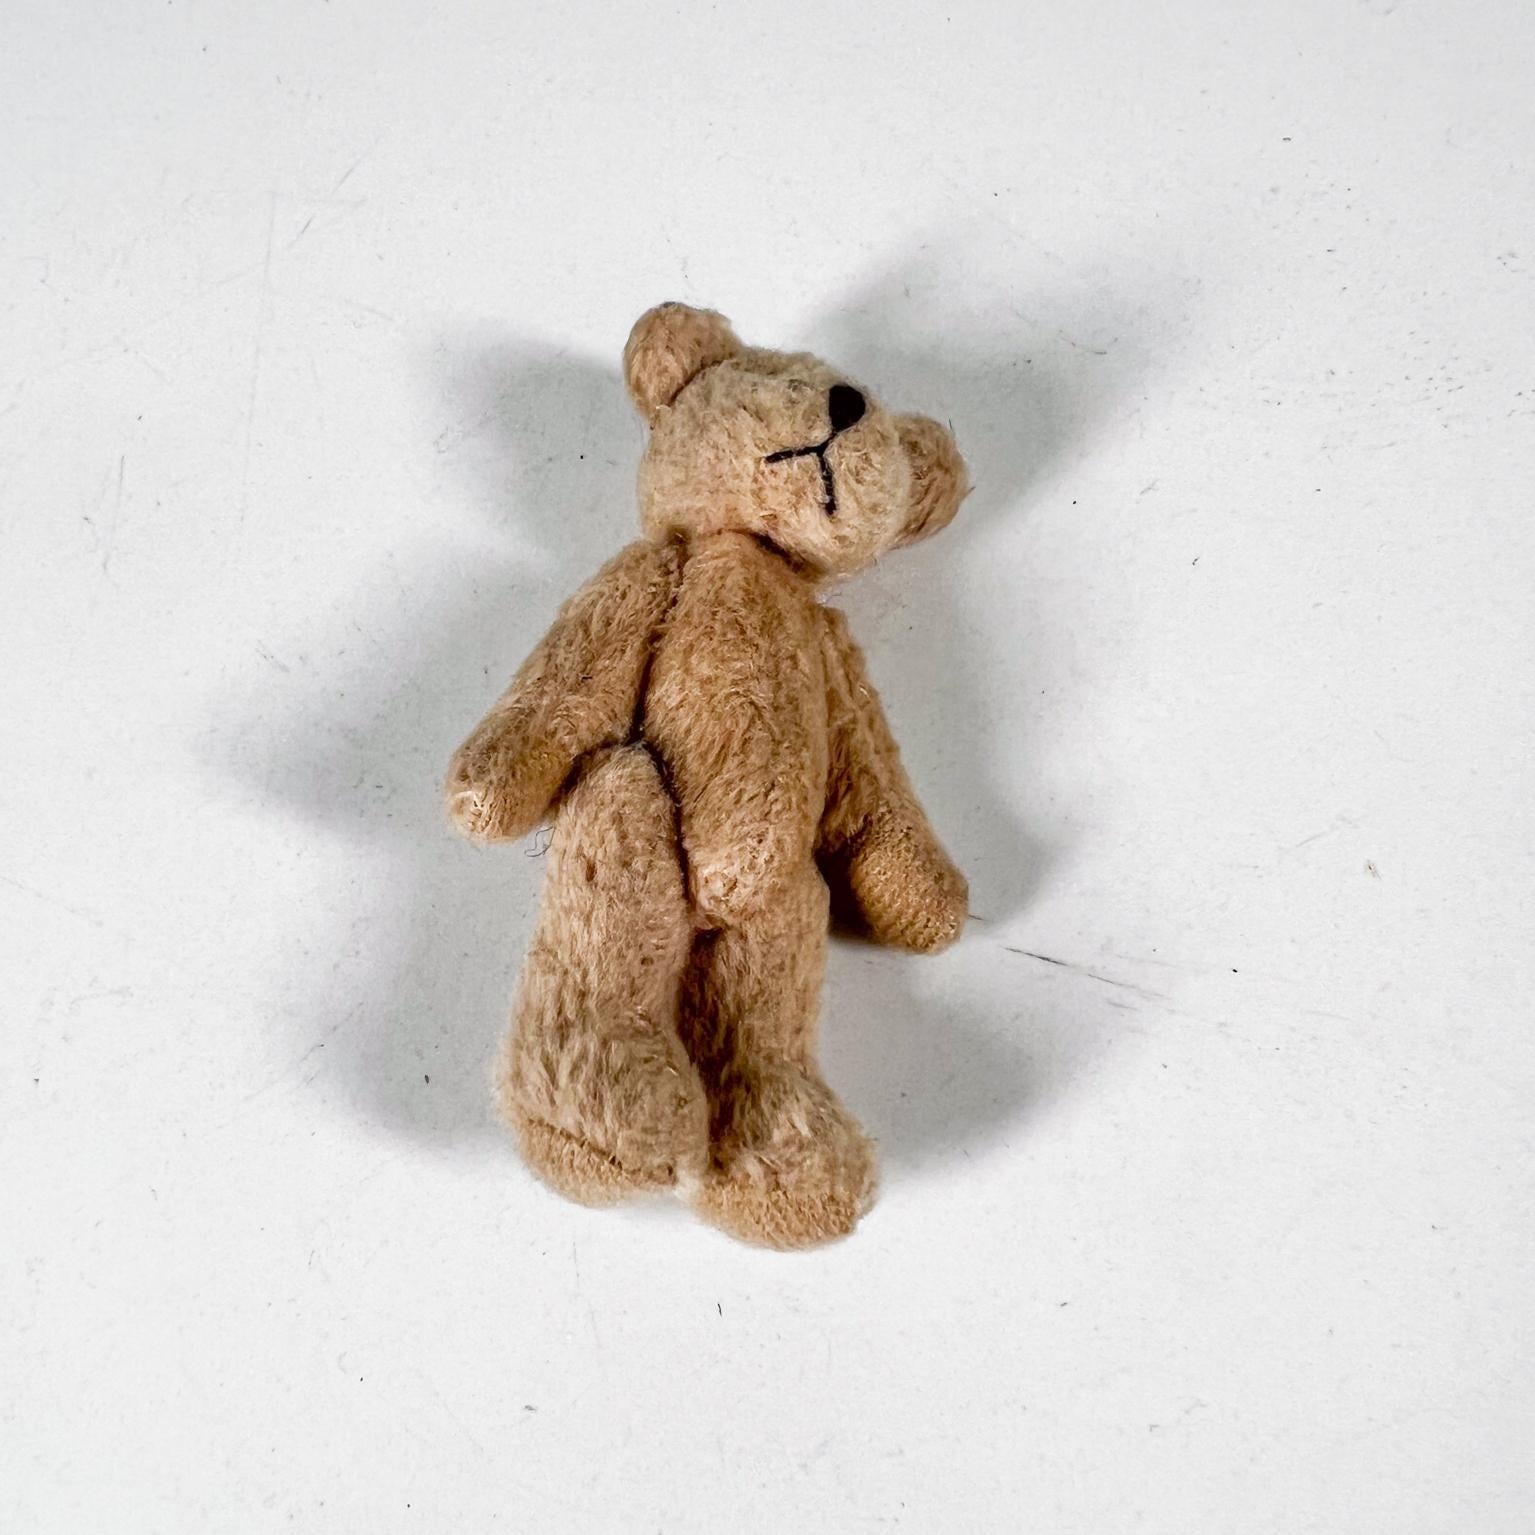 Précieux ours en peluche Vintage Tiny Baby Teddy Bear
articulé, doux et câlin
3 h x 1,75 l x 0,88 p
Condition vintage précieuse non restaurée
Examinez toutes les images fournies.